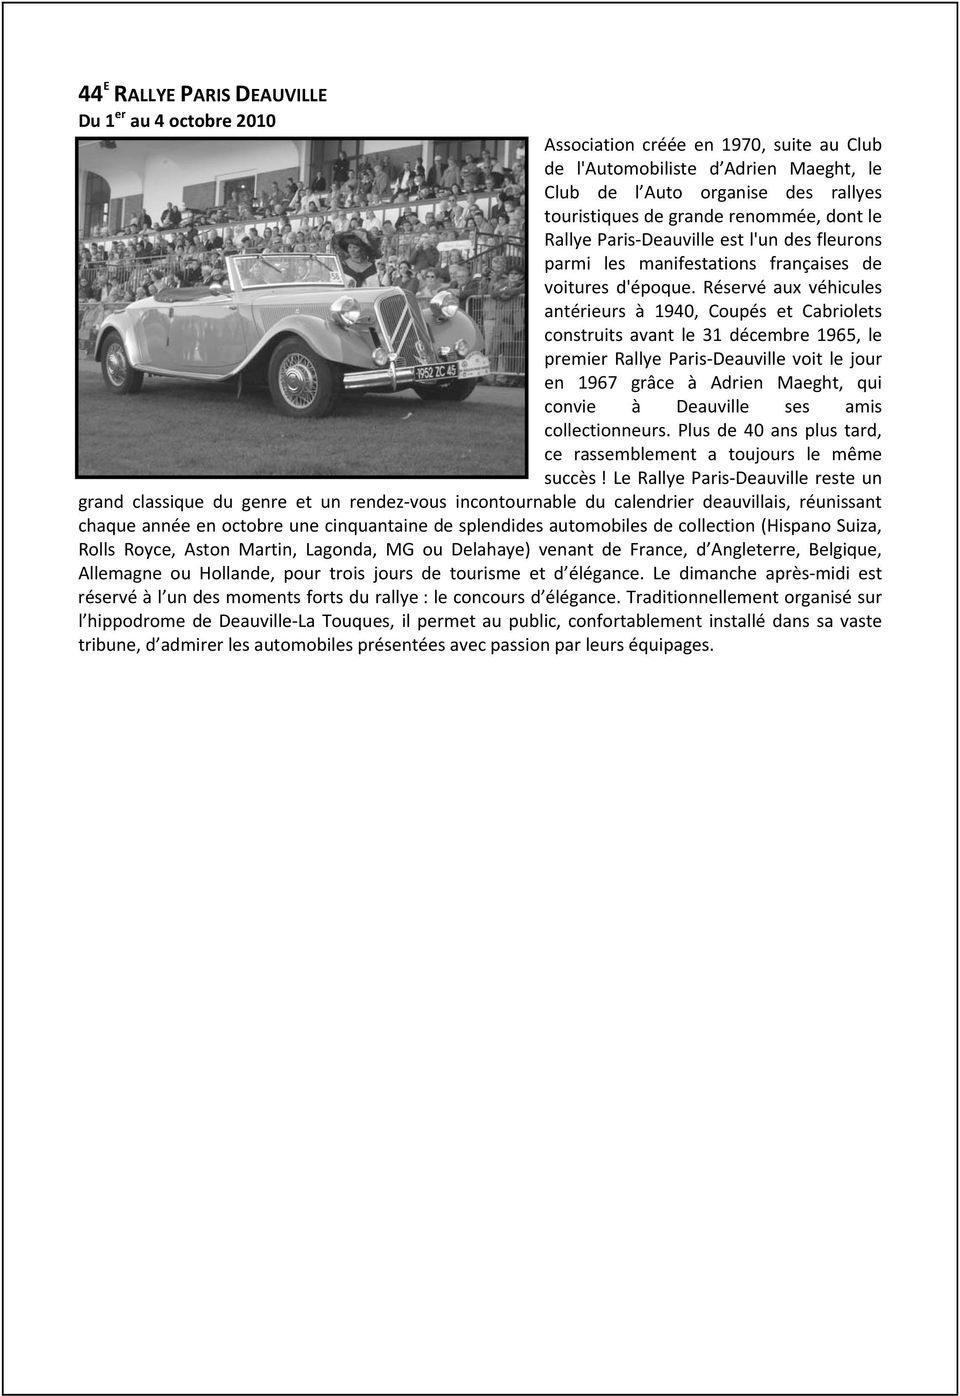 Réservé aux véhicules antérieurs à 1940, Coupés et Cabriolets construits avant le 31 décembre 1965, le premier Rallye Paris Deauville voit le jour en 1967 grâce à Adrien Maeght, qui convie à